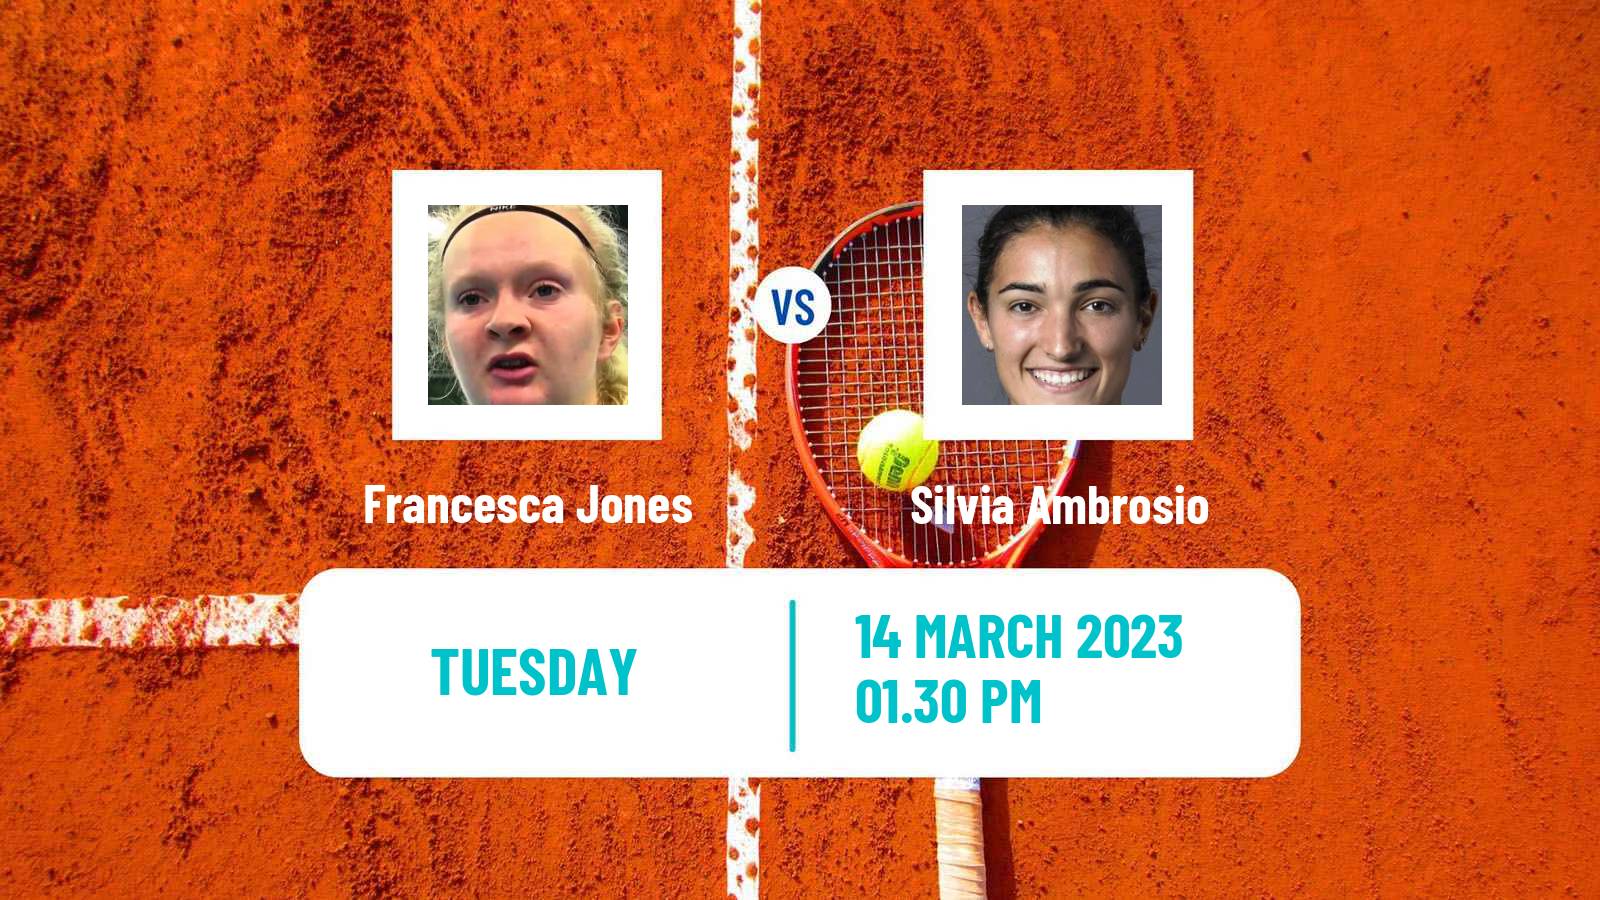 Tennis ITF Tournaments Francesca Jones - Silvia Ambrosio